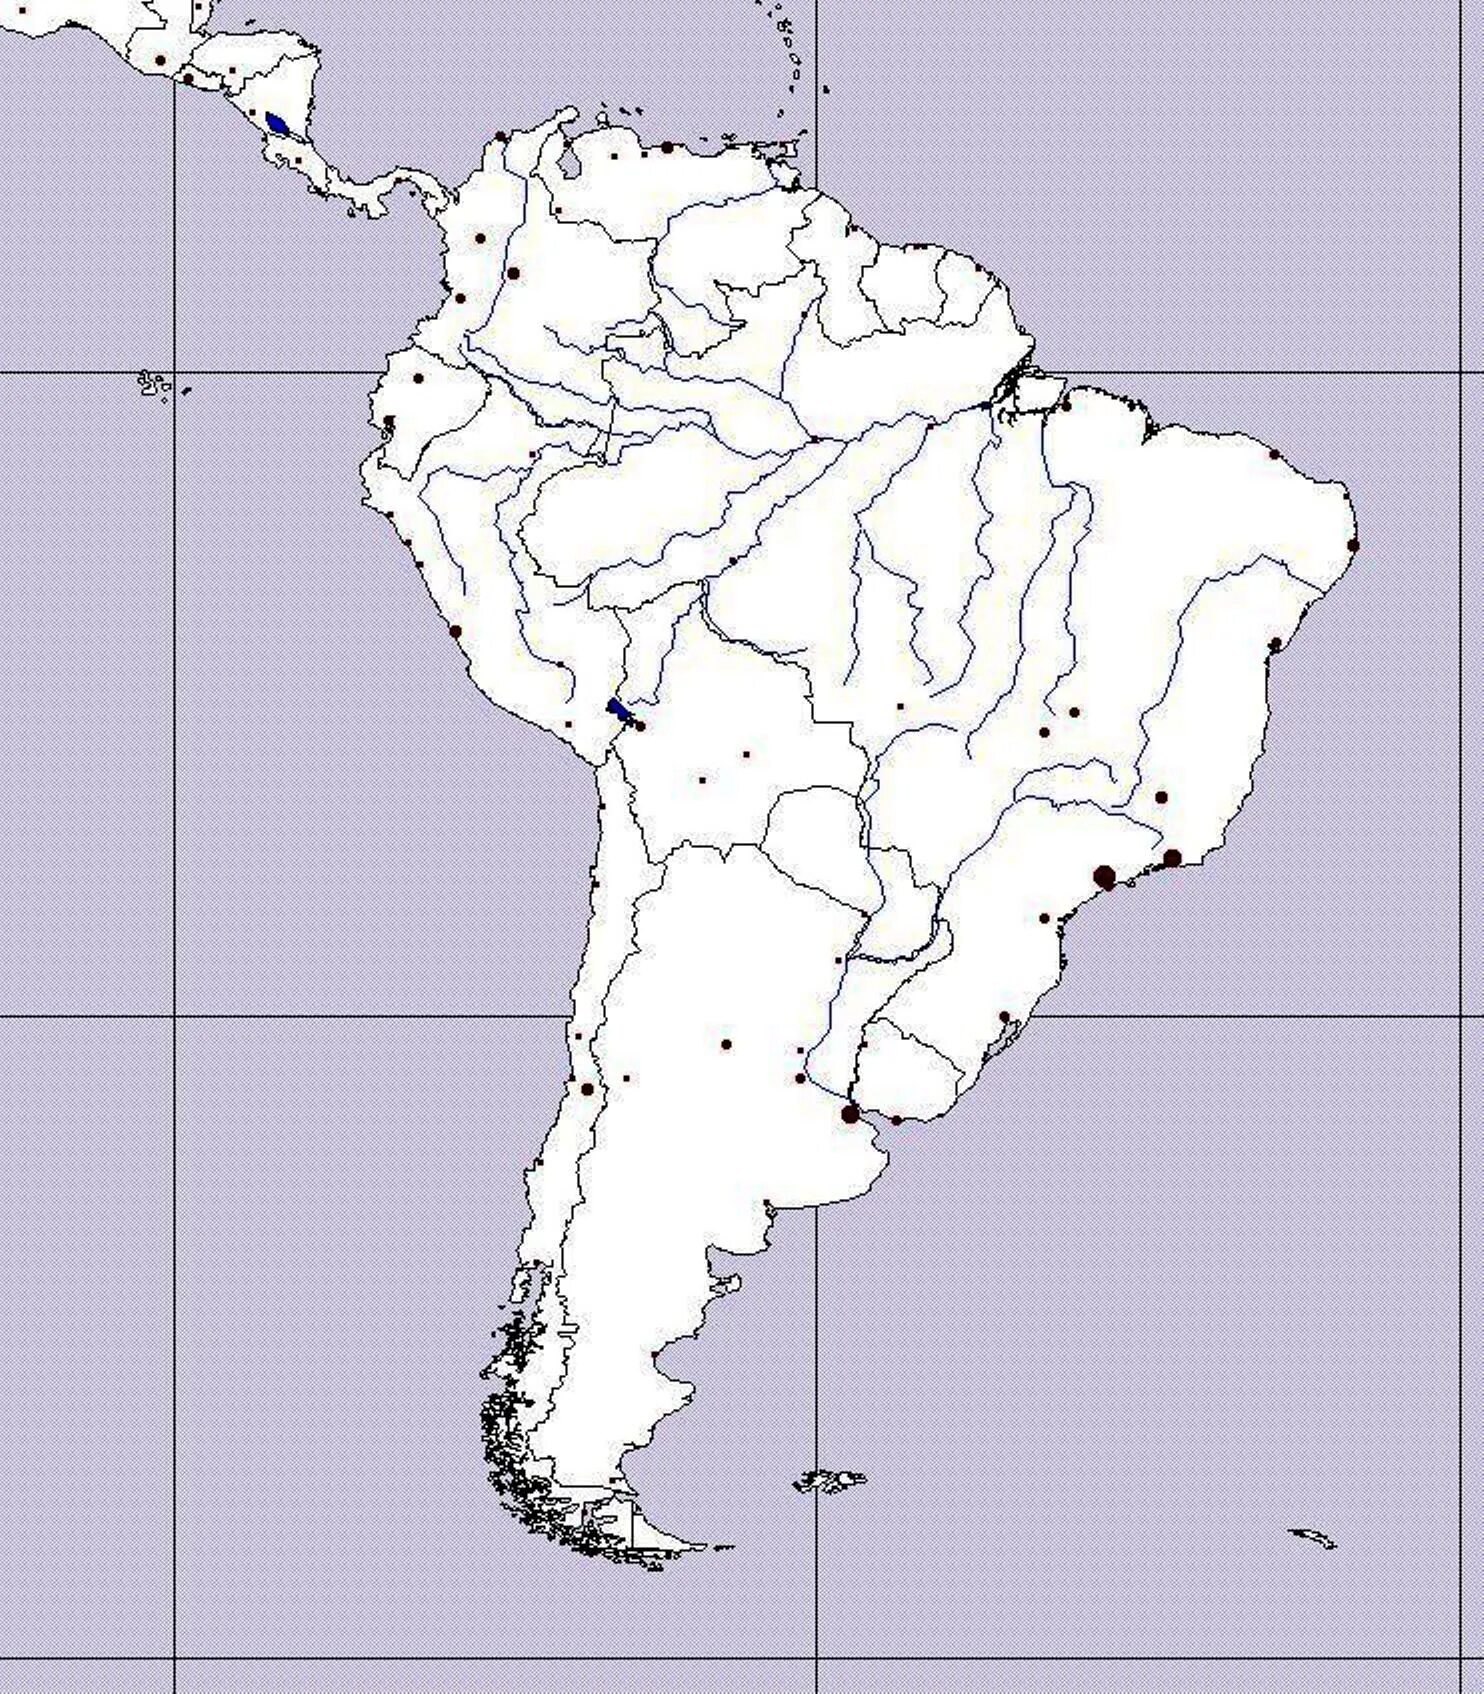 Контурн карта Южной Америки. Контурная карта южноъамерики. Контурная крата Южной Америки. Политическая контурная карта Южной Америки. Подпишите на контурной карте южной америки названия